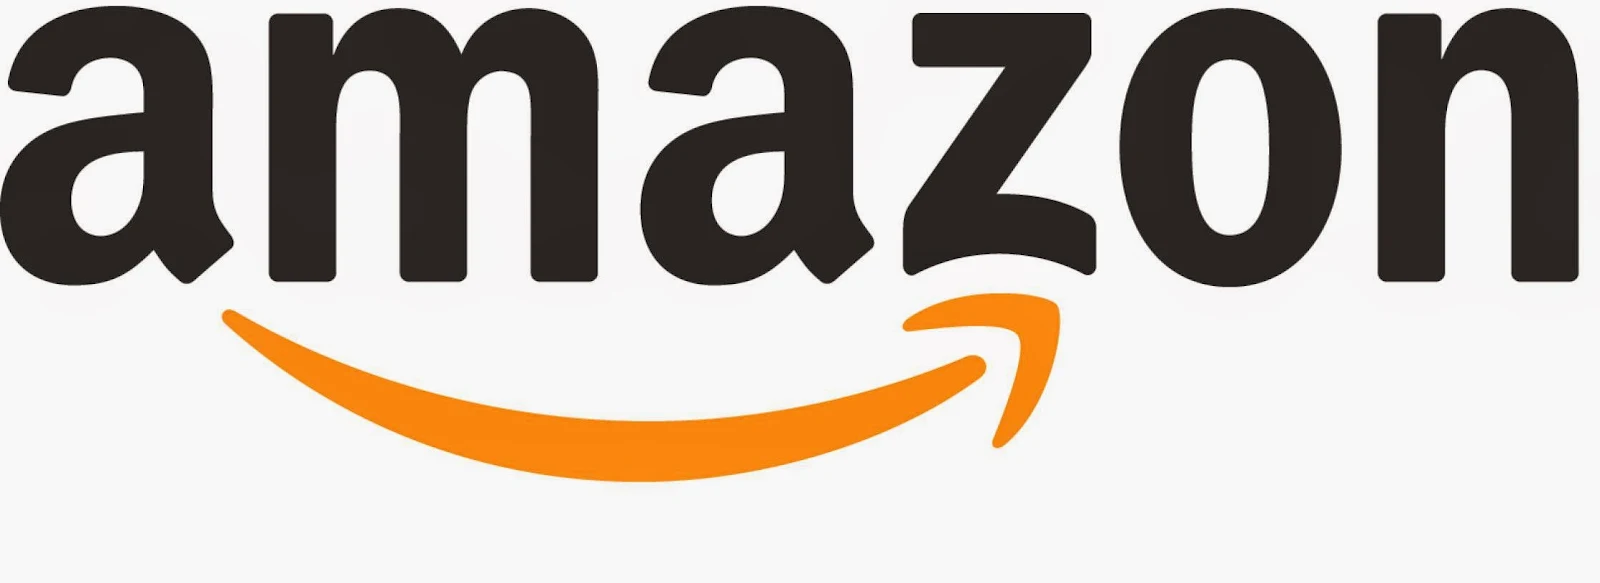 How to Buy Stuff on Amazon : eAskme